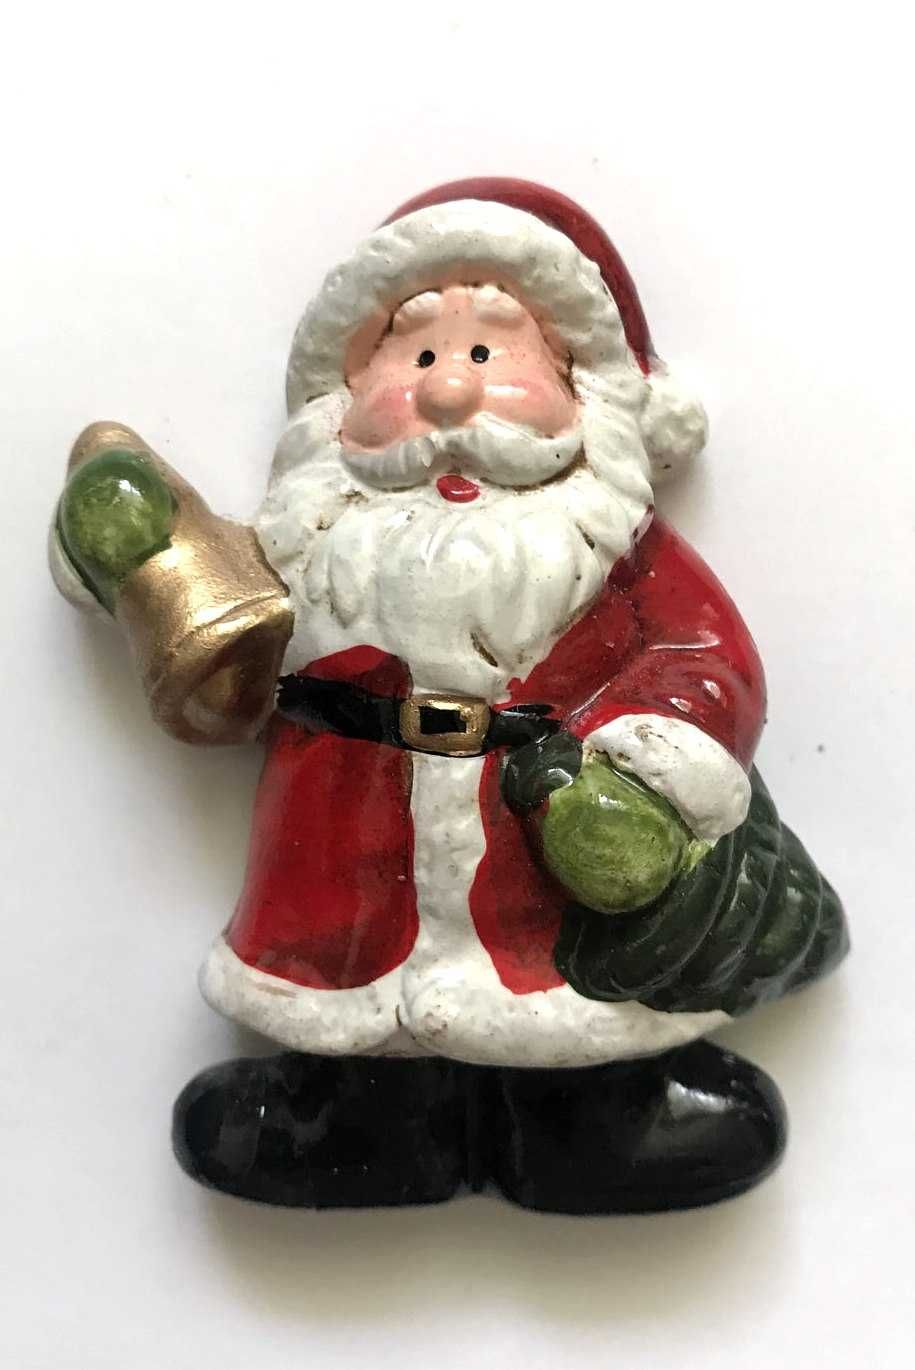 Magnes na lodówkę Święty Mikołaj  8 x 5 cm